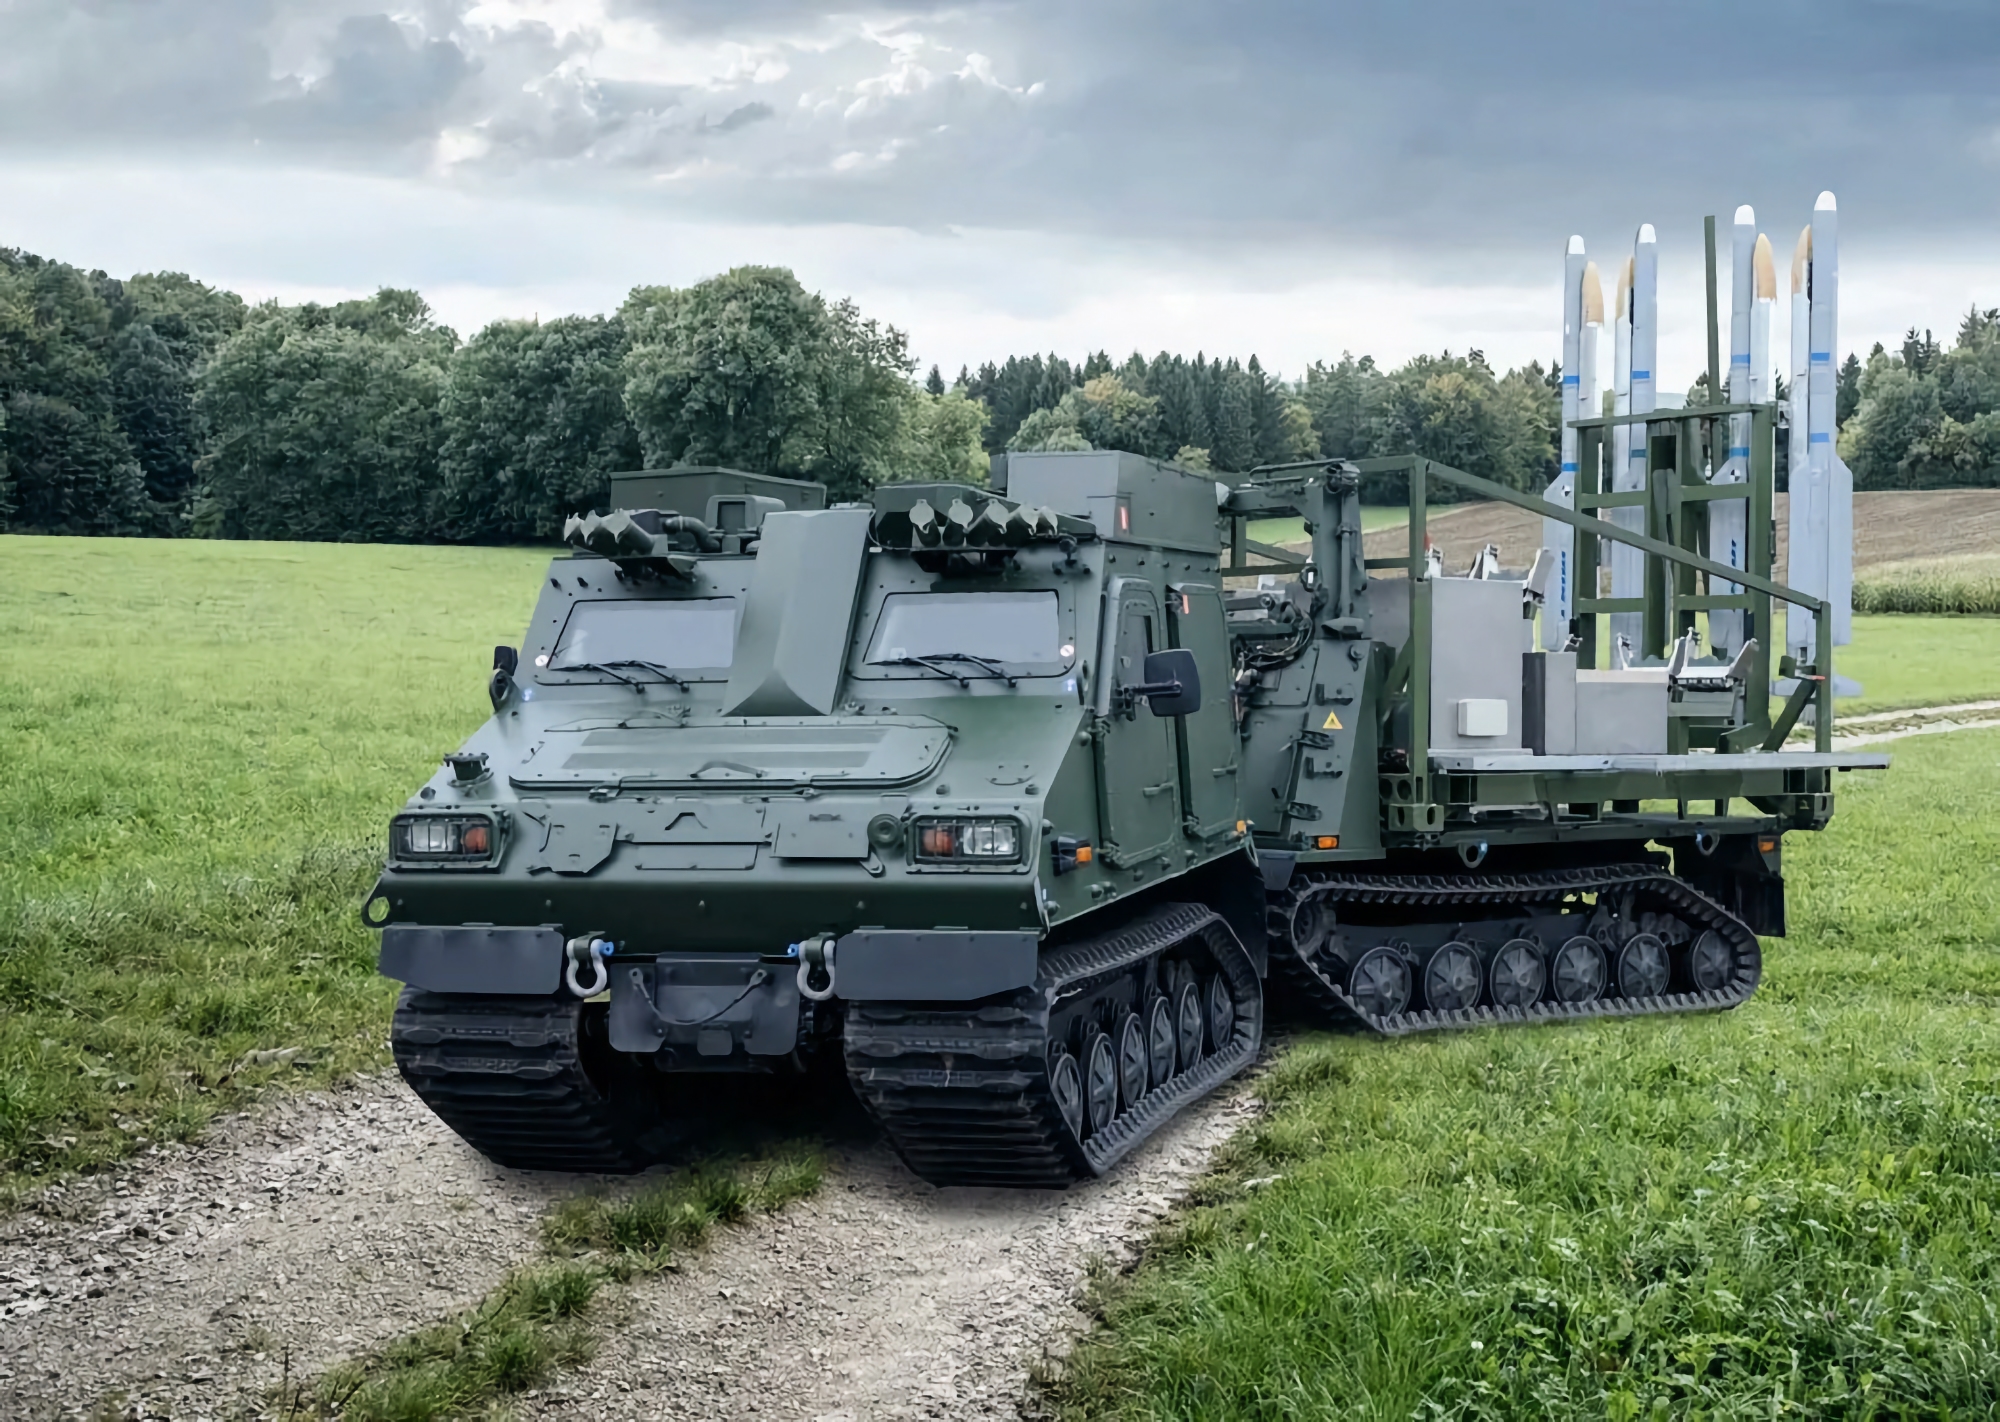 2 IRIS-T SLS SAM-avfyrningsramper, 8 PzH 2000 SAU för reservdelar och 4 HX81 tankbilar: Tyskland har överlämnat ett nytt vapenpaket till Ukraina